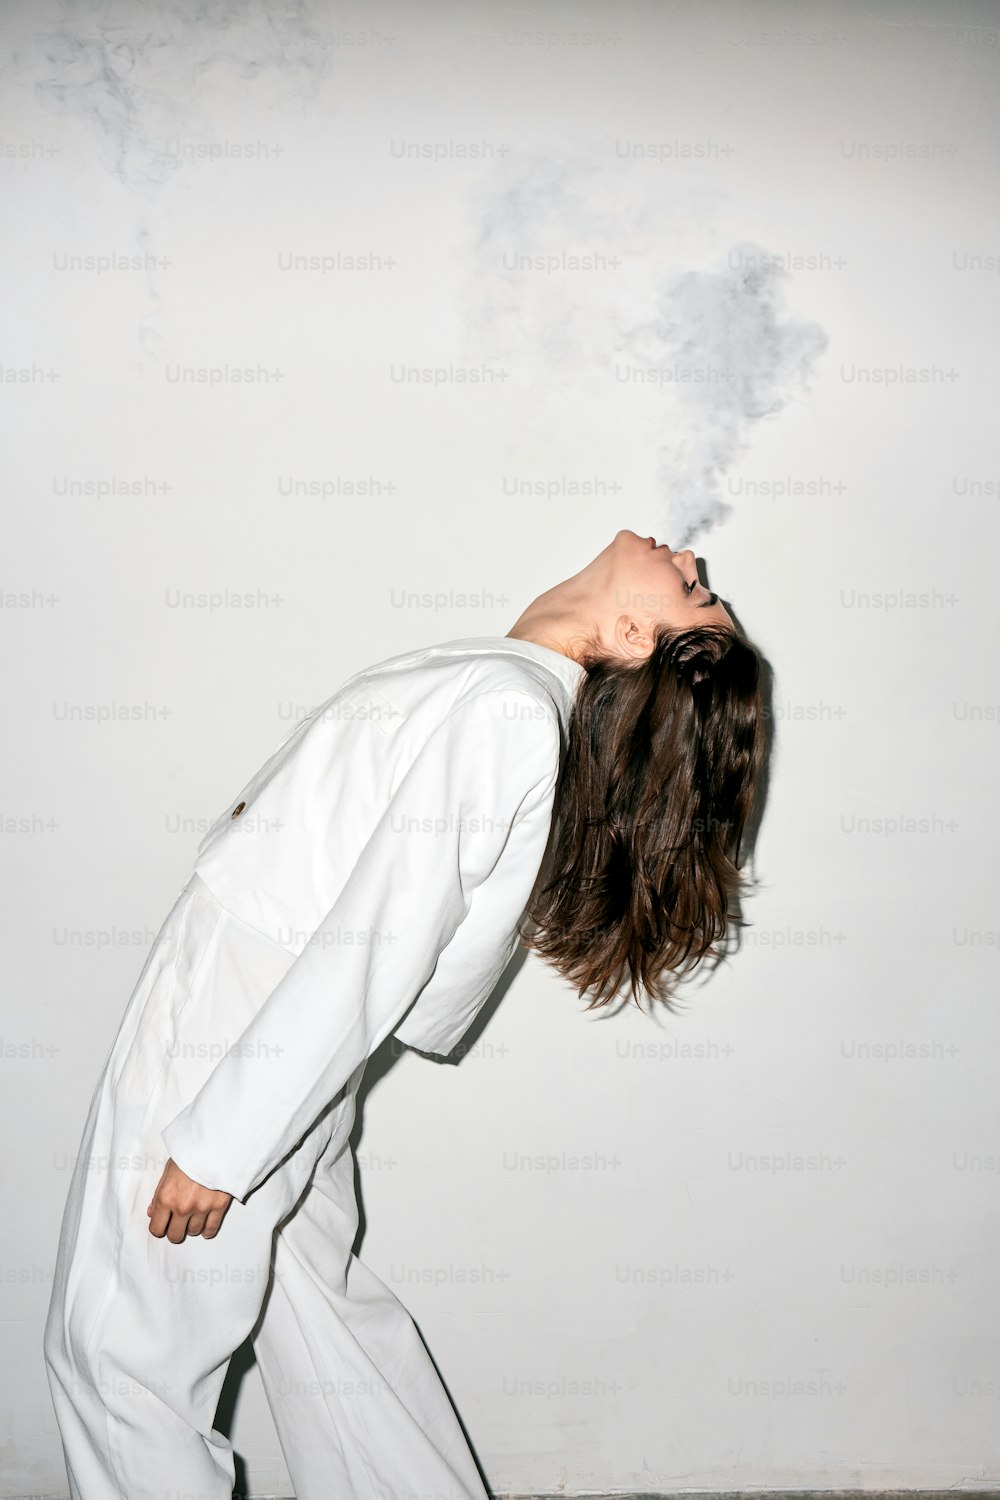 Una mujer con traje blanco está fumando un cigarrillo